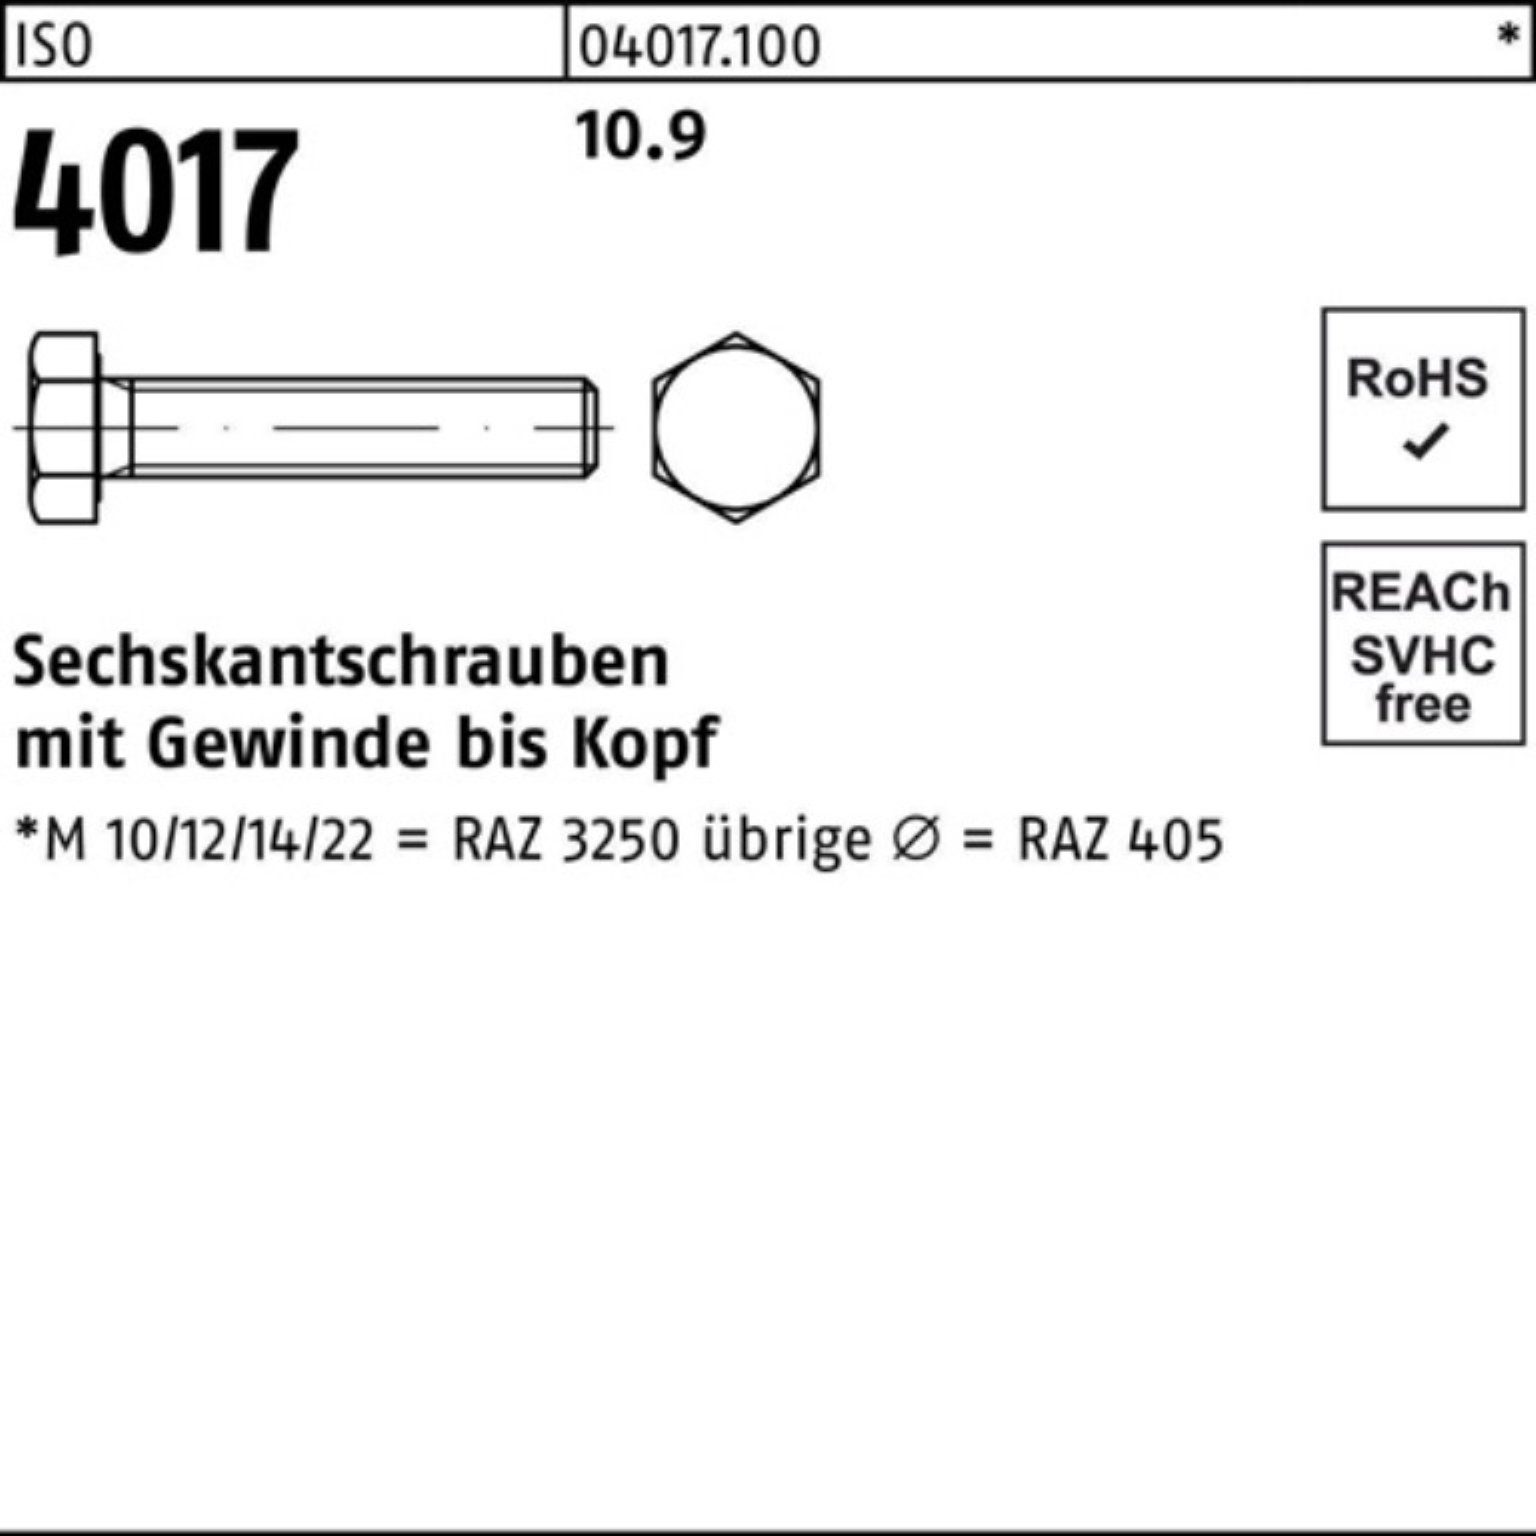 Bufab Sechskantschraube 100er 10.9 Pack Sechskantschraube M6x ISO 30 VG 40 100 Stück 4017 ISO